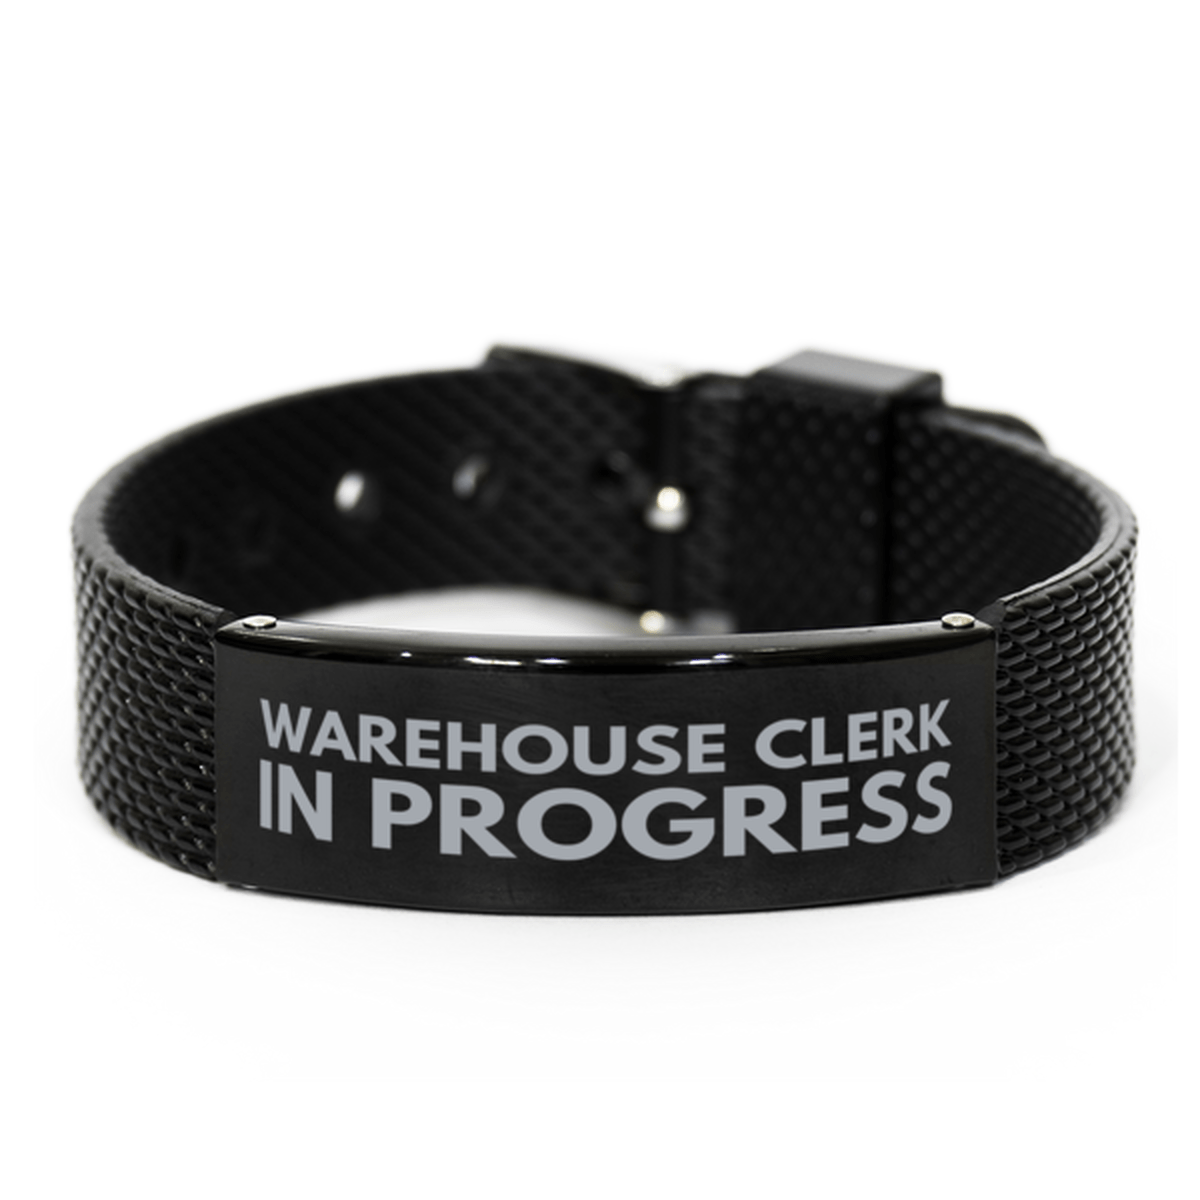 Inspirational Warehouse Clerk Black Shark Mesh Bracelet, Warehouse Clerk In Progress, Best Graduation Gifts for Students